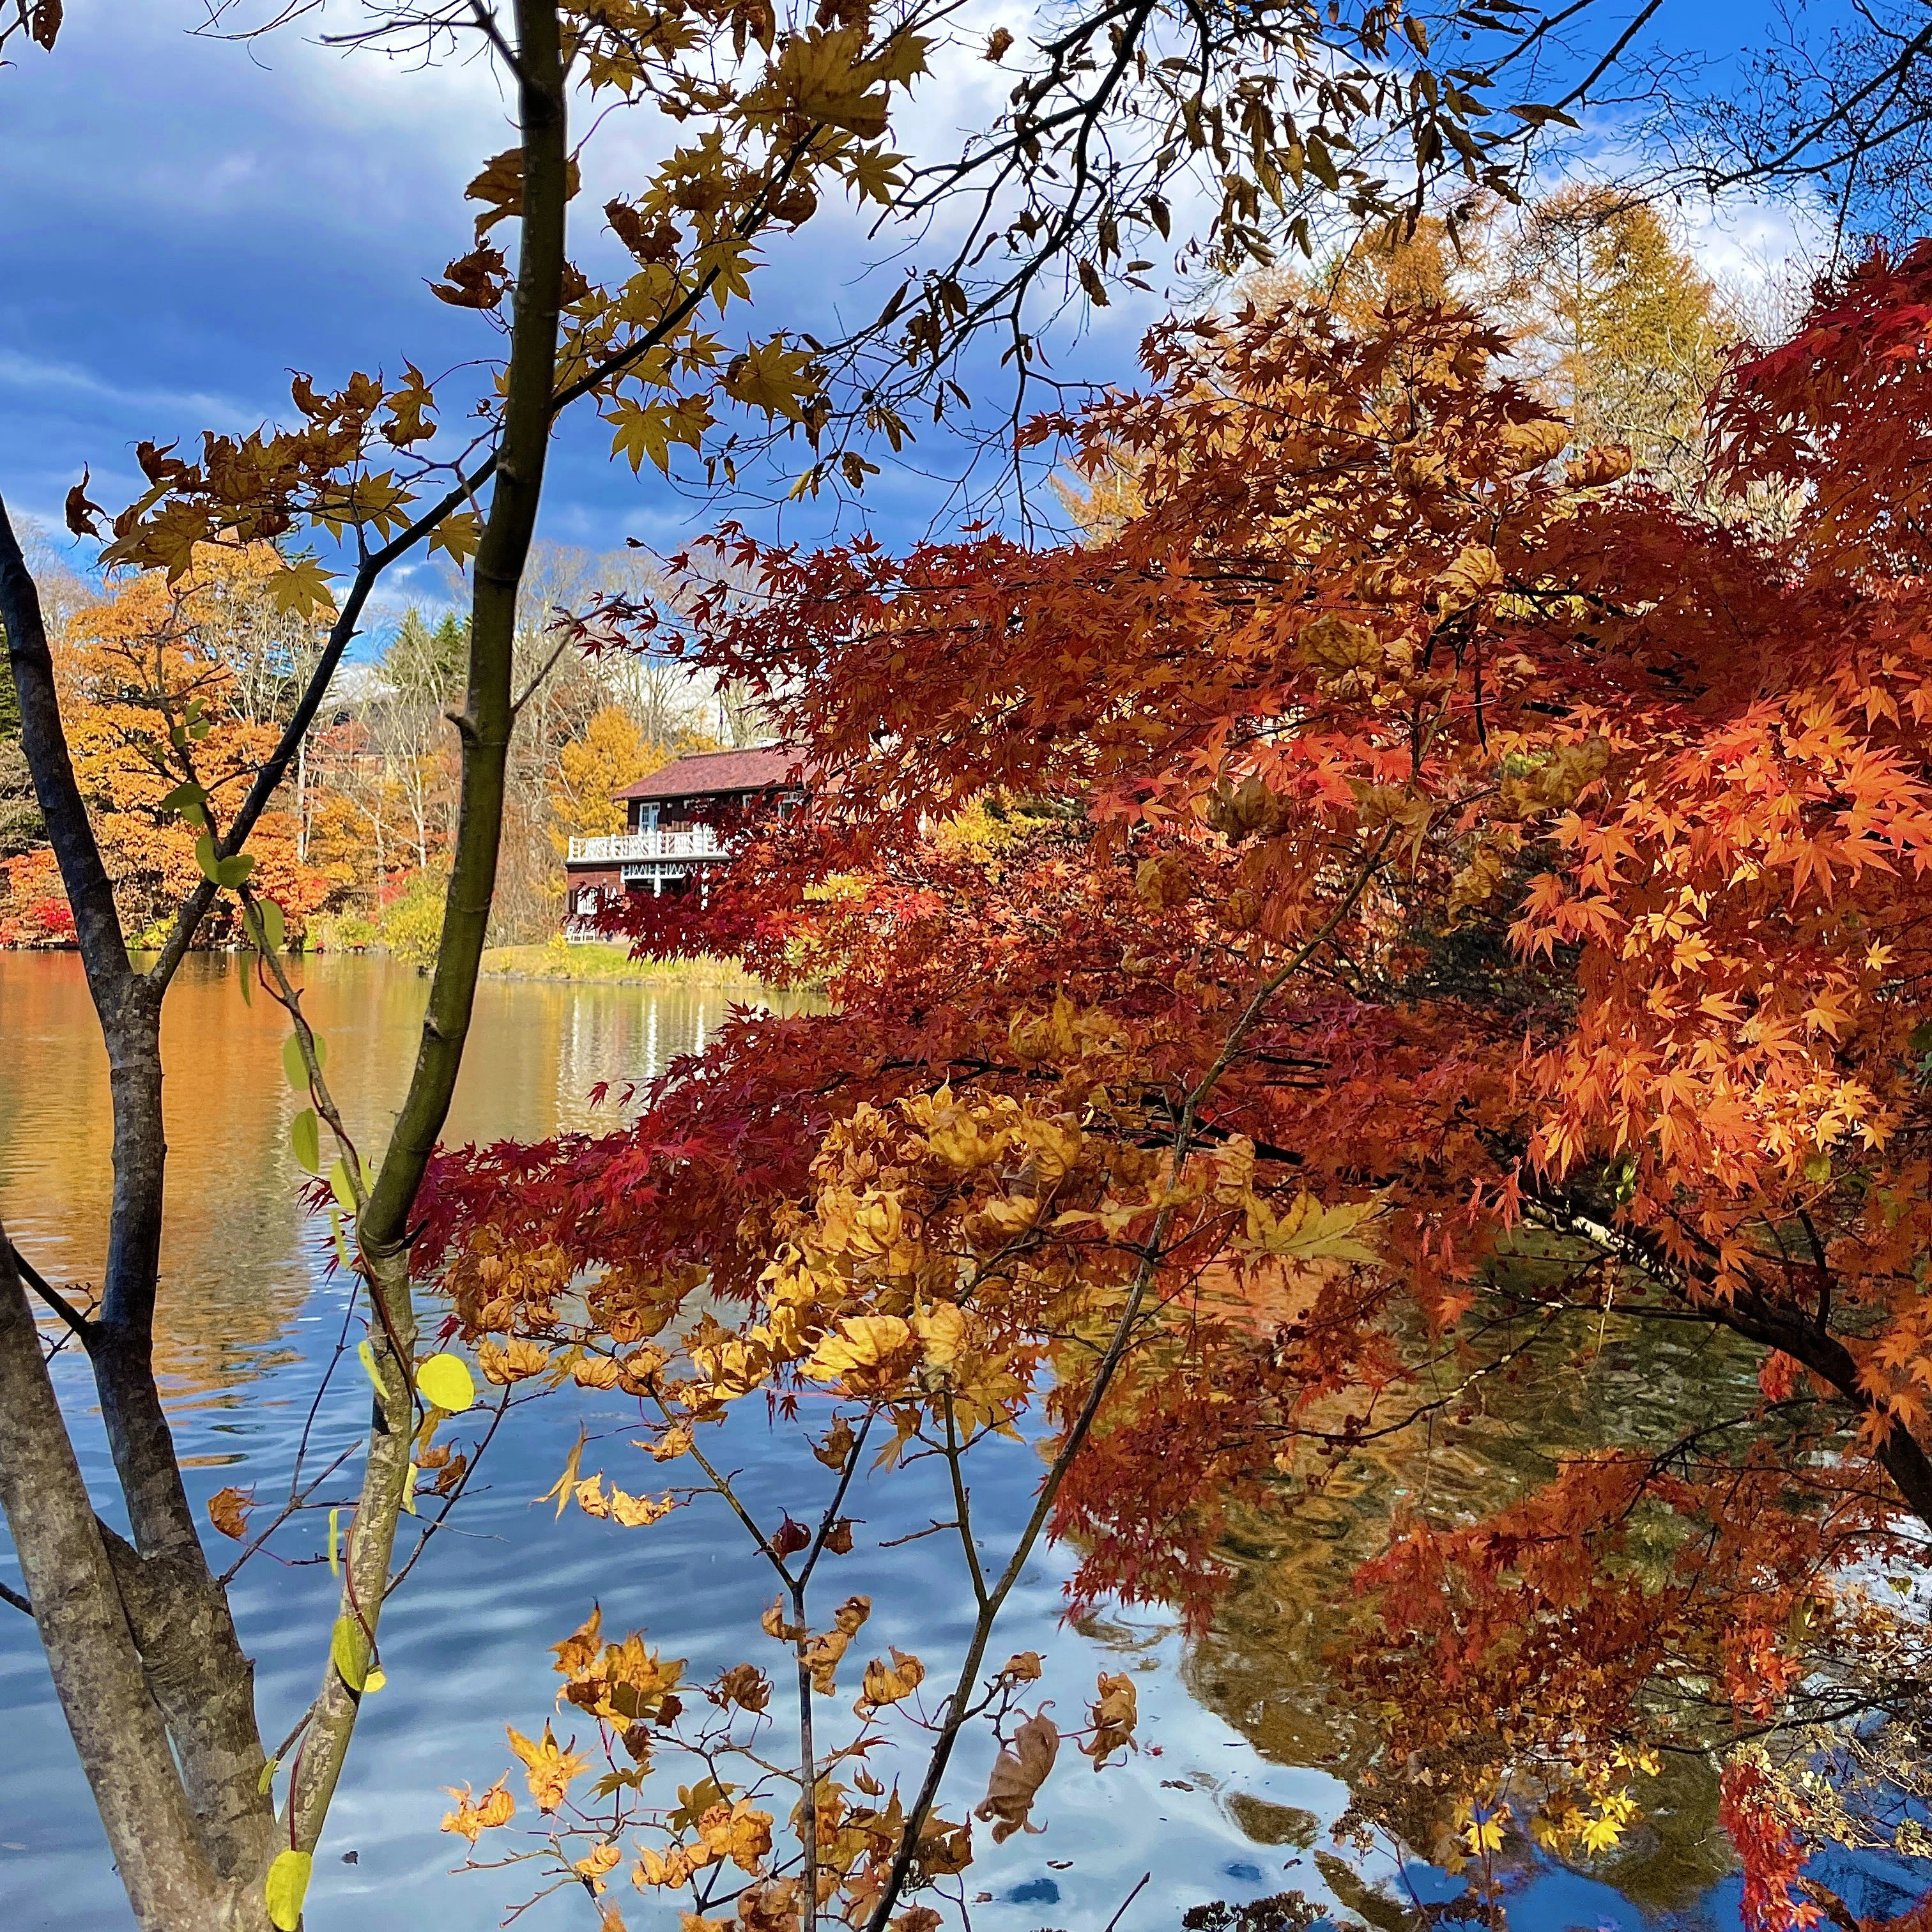 軽井沢タリアセン　秋晴れの空、塩沢湖の青と紅葉した樹々の赤のコントラストが美しい。